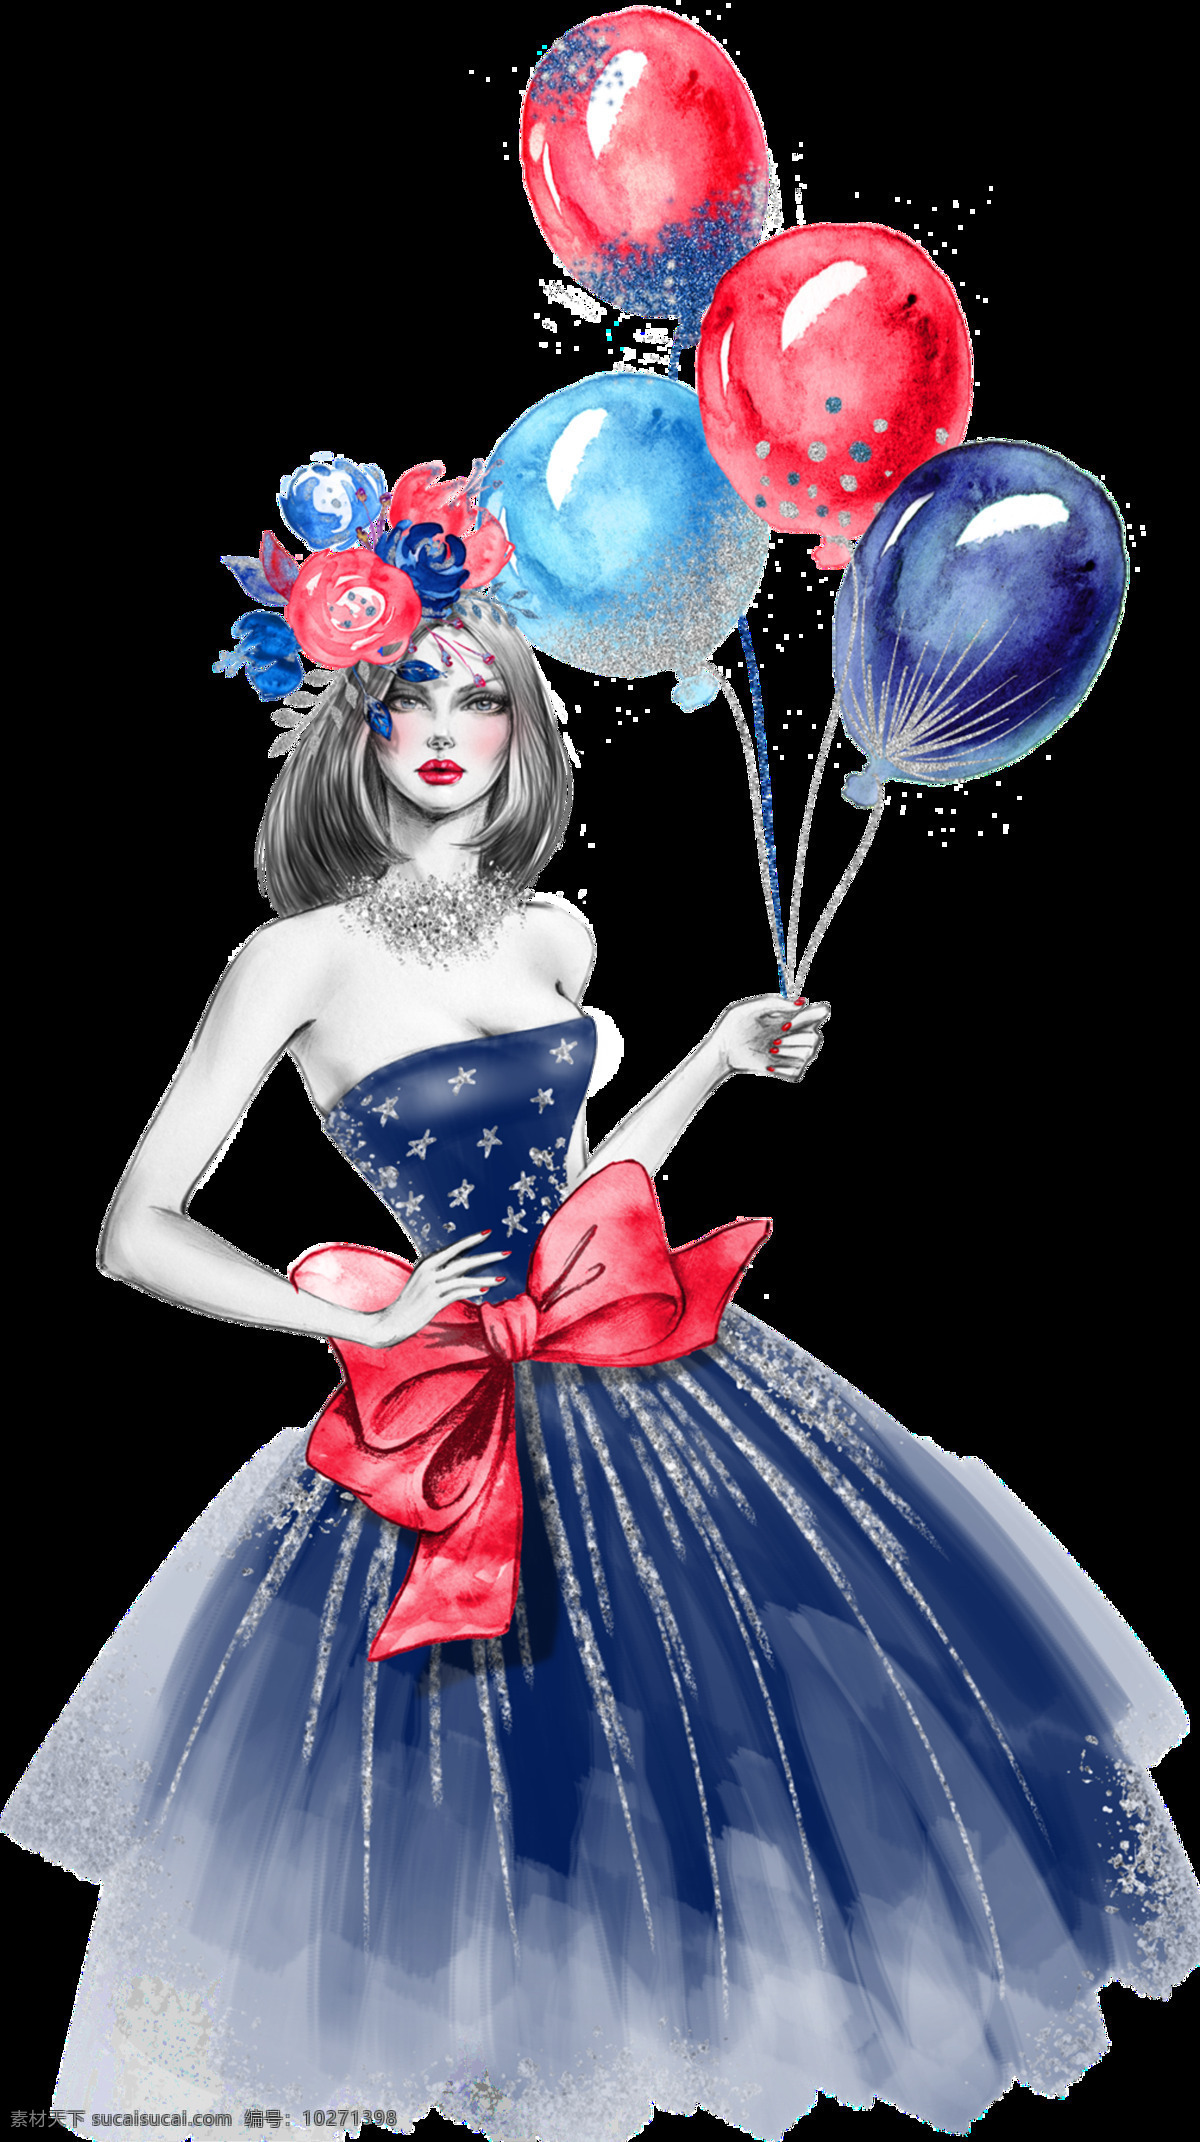 水彩画 模特 性感女郎 装饰 图案 气球 玫瑰 蔷薇 蝴蝶结 抹胸裙 红唇女郎